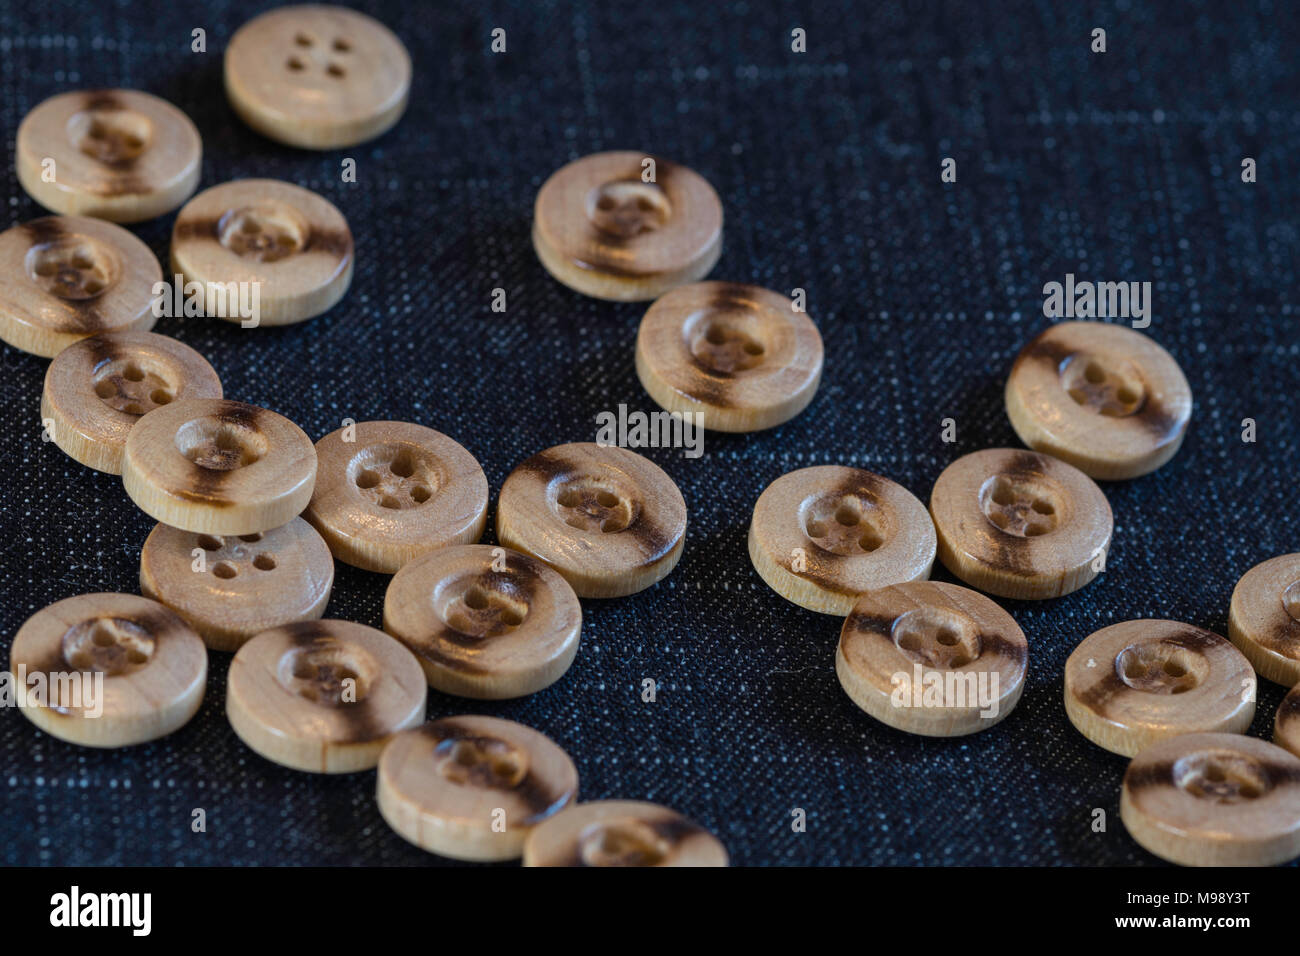 Botones de madera fotografías e imágenes de alta resolución - Alamy